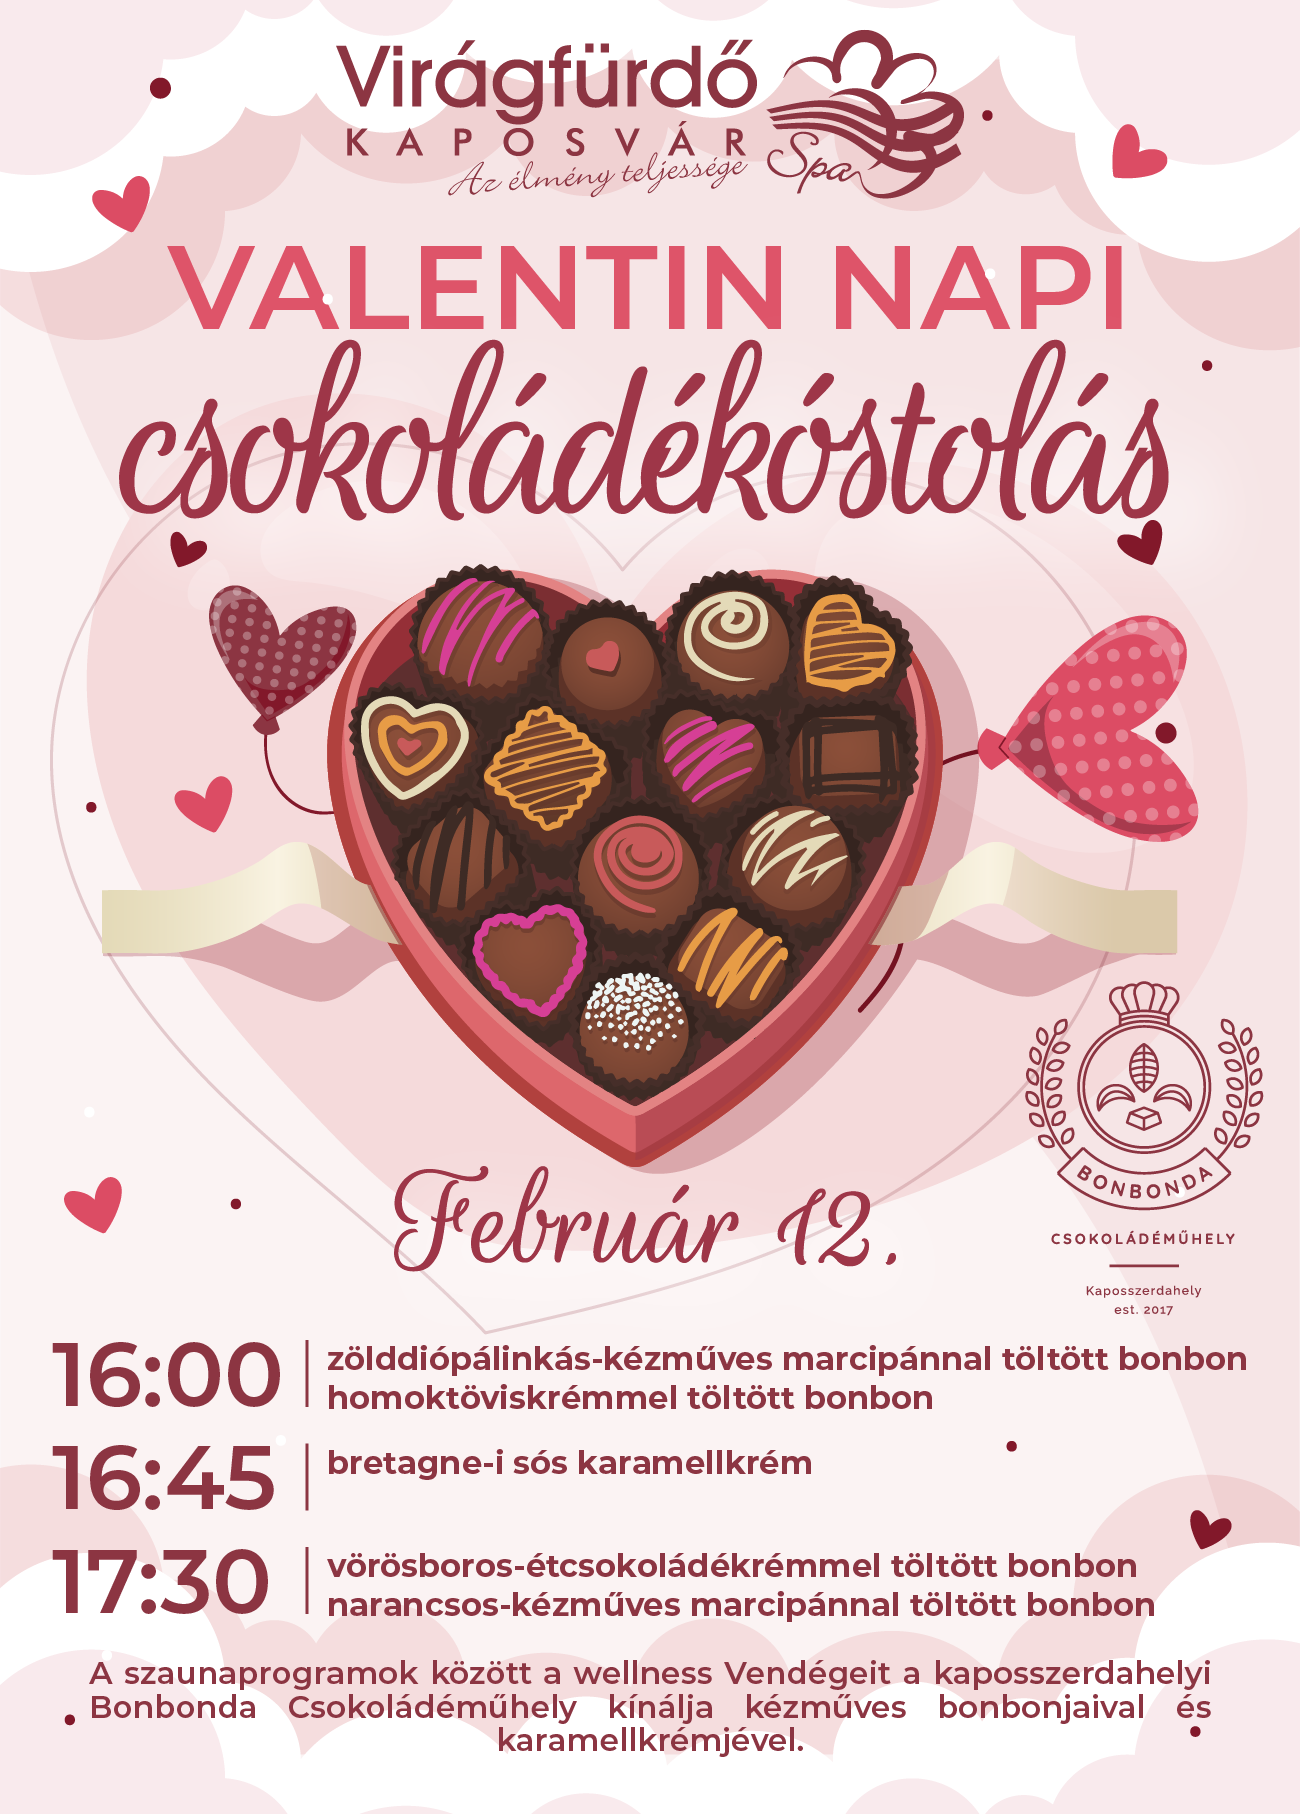 Valentin napi csokoládé kóstolás jav.png